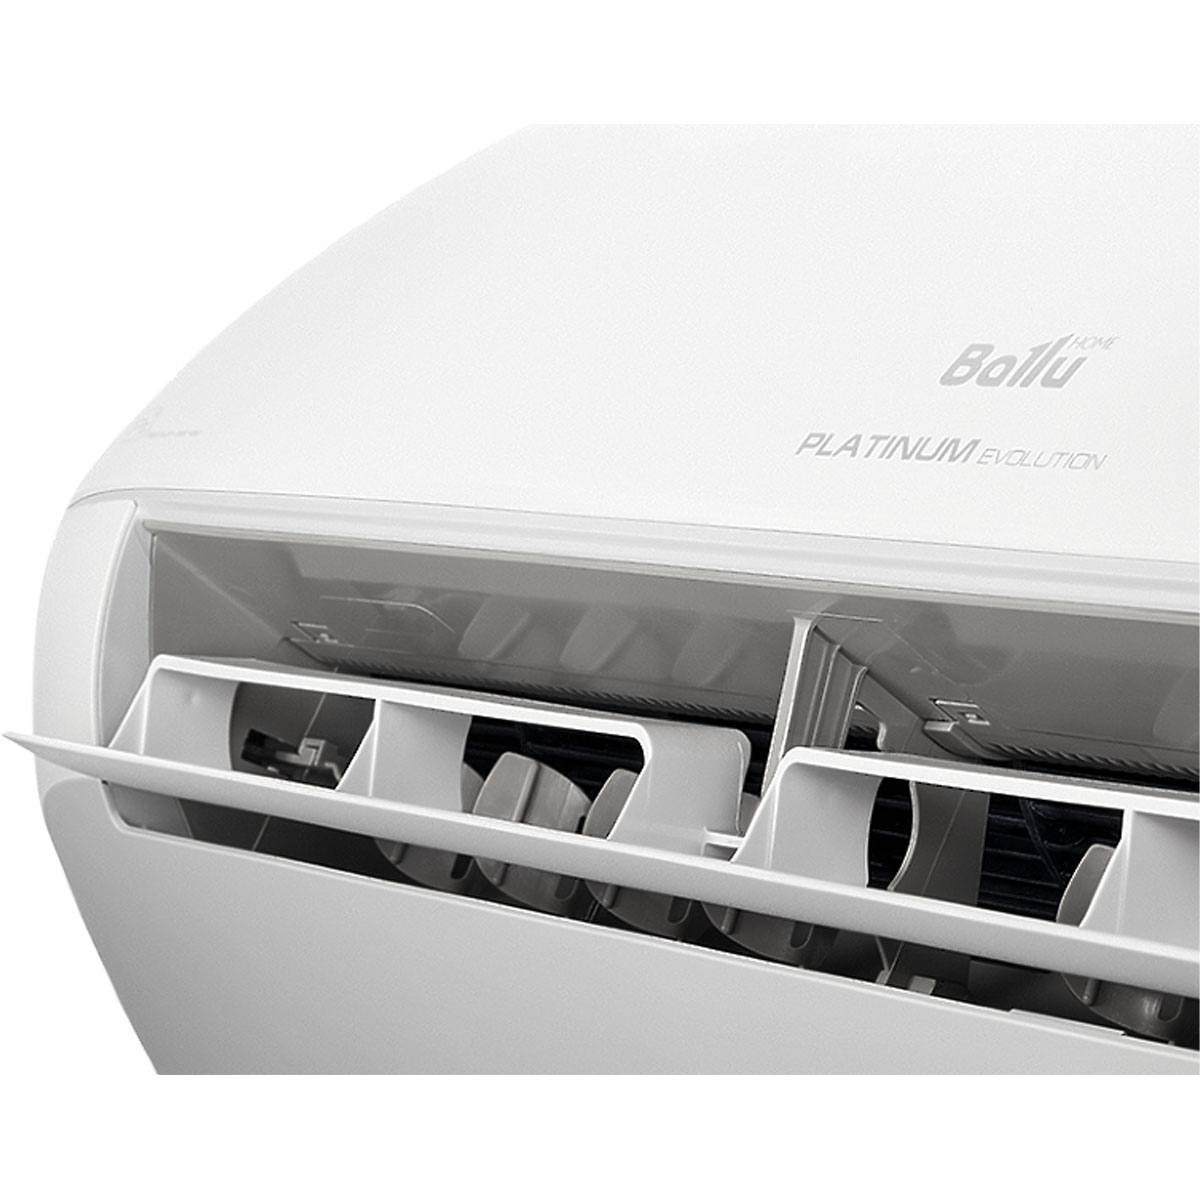 Инверторная сплит-система BALLU Platinum Evolution BSUI-12HN8_22Y (GMCC, Smart Wi-Fi, 41 м2, 21 дБ)